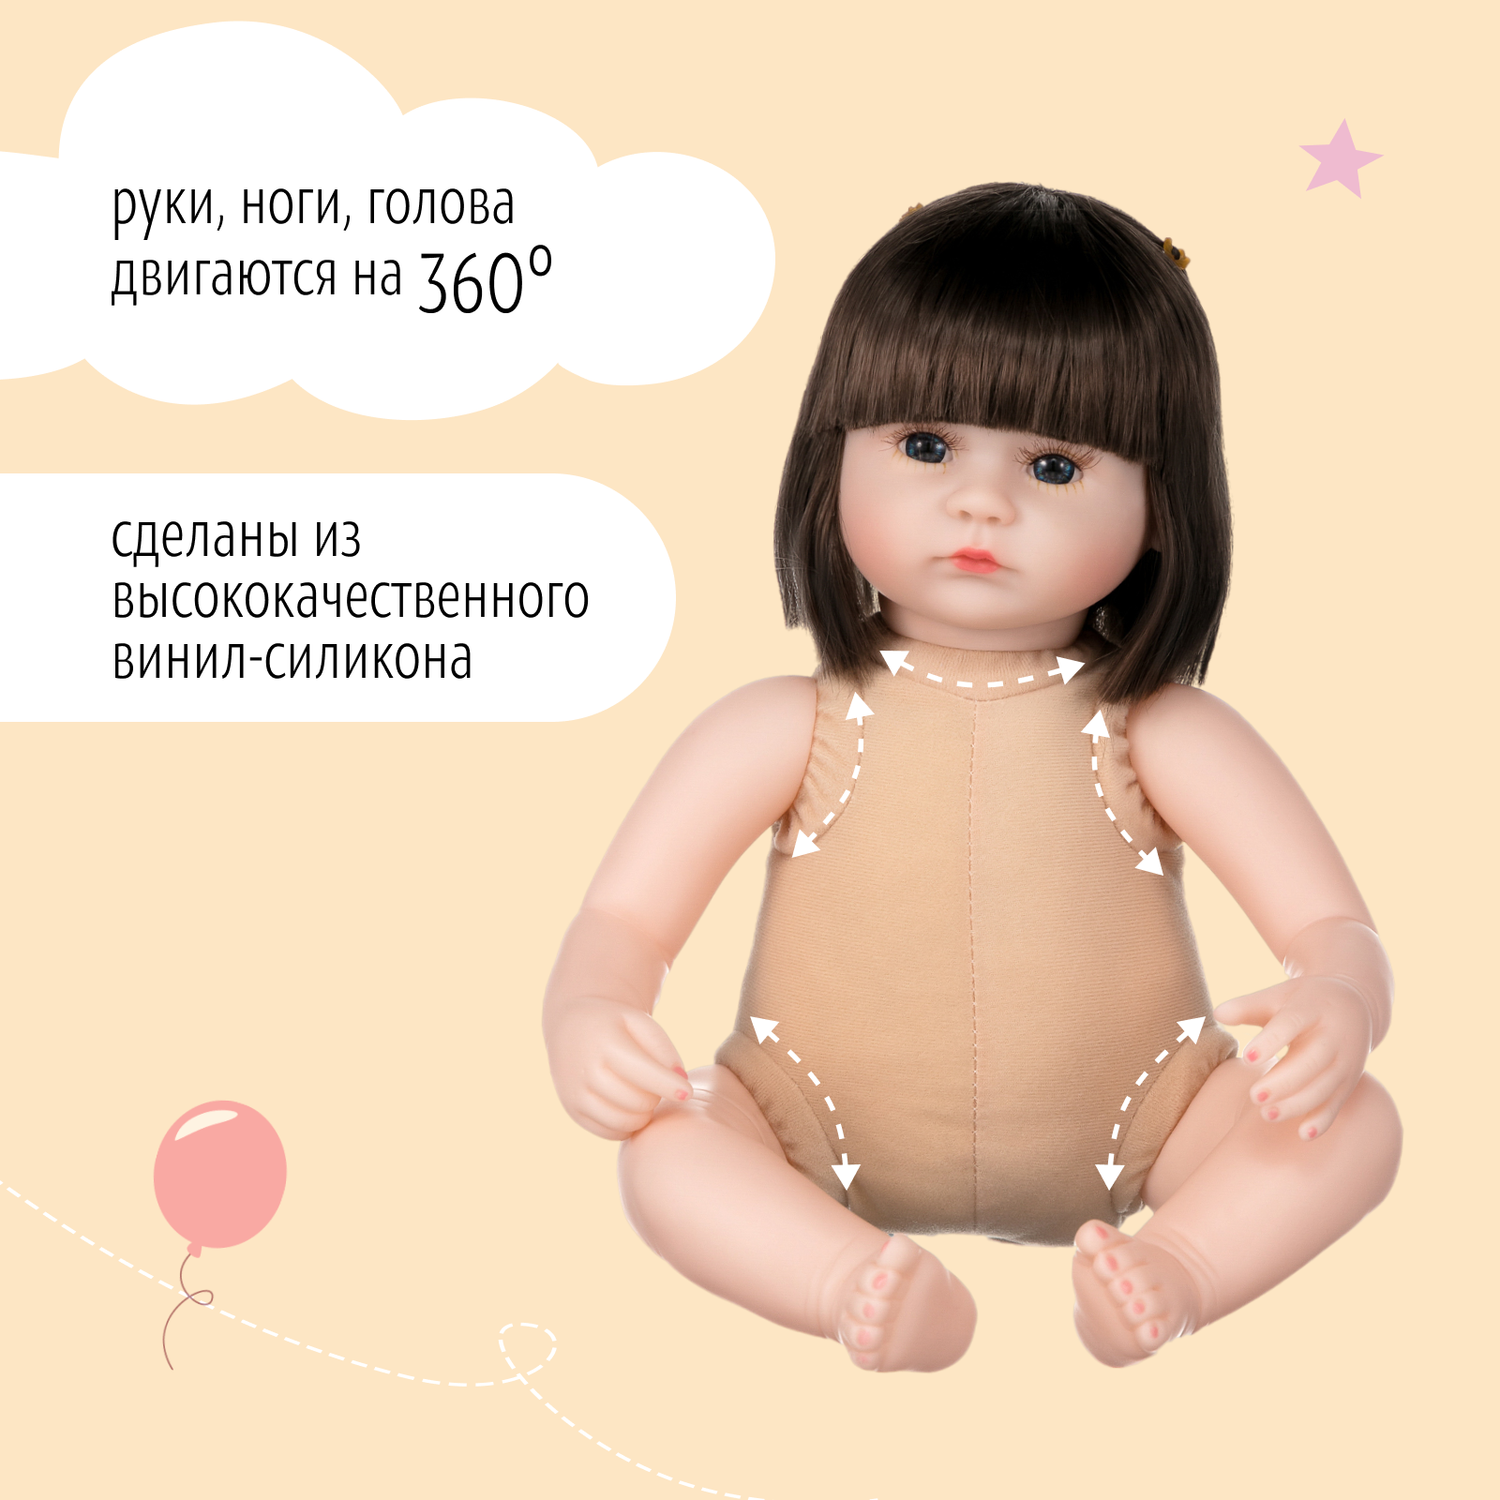 Кукла Реборн QA BABY Ирина девочка большая пупс набор игрушки для девочки 42 см 45007 - фото 13